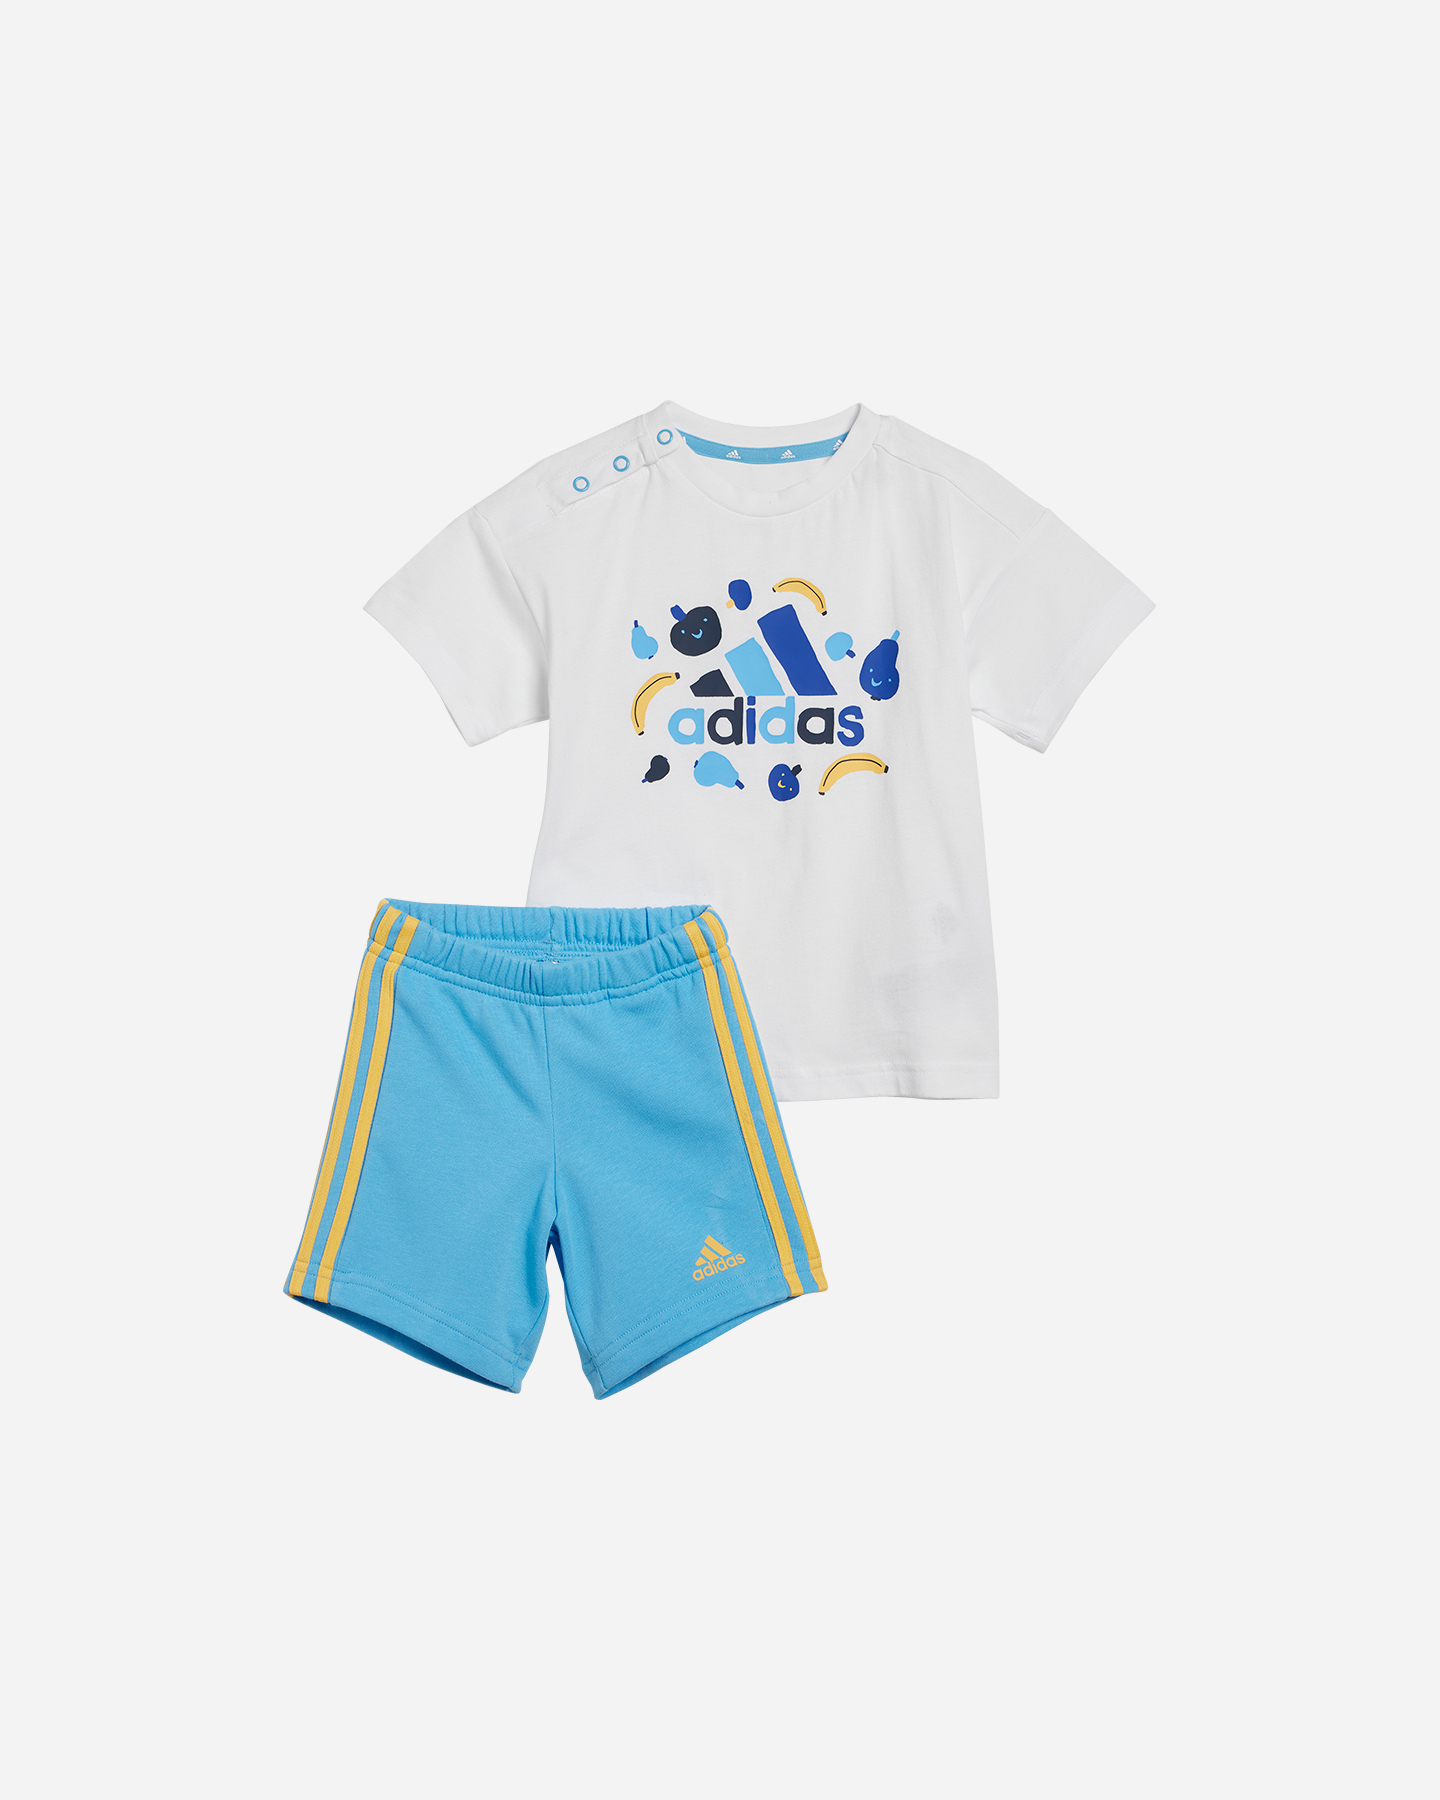 Adidas Boy Jr - Completo